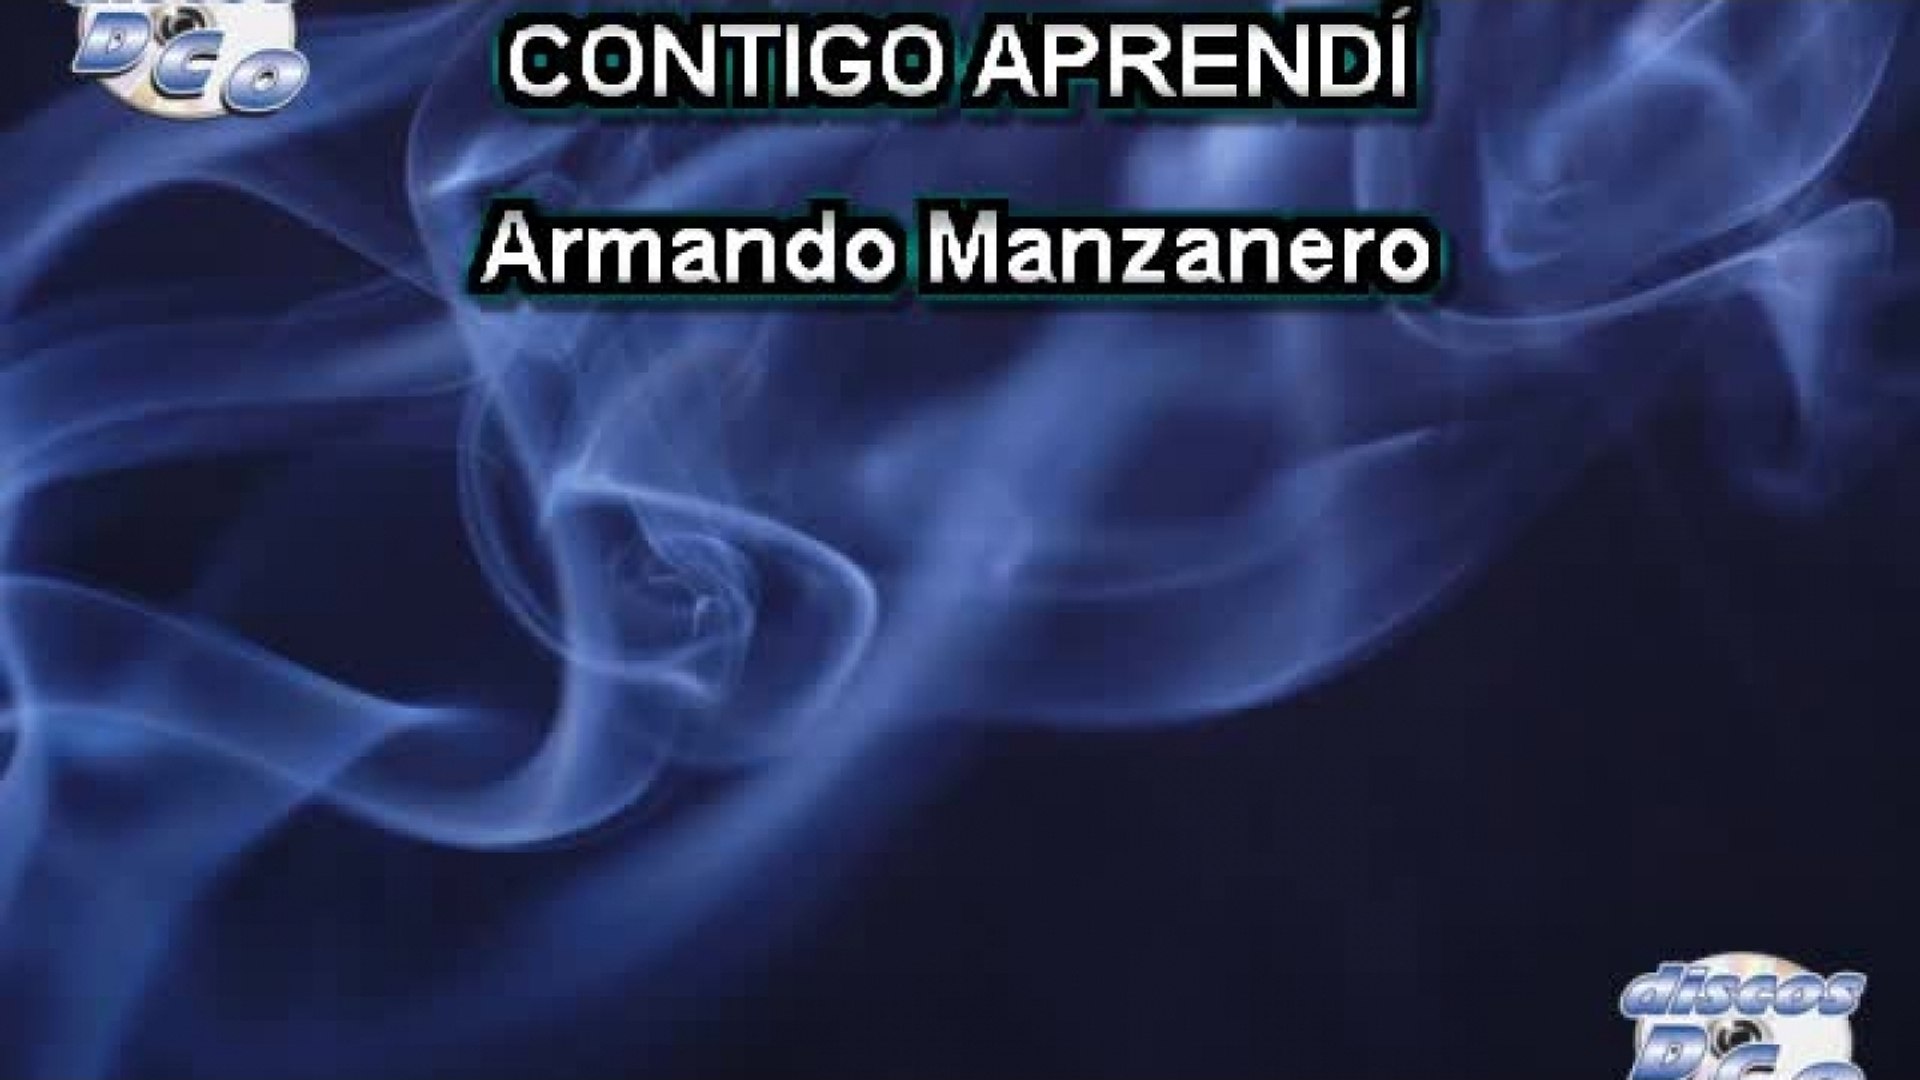 Karaoke Canta como Armando Manzanero - CONTIGO APRENDÍ - video Dailymotion